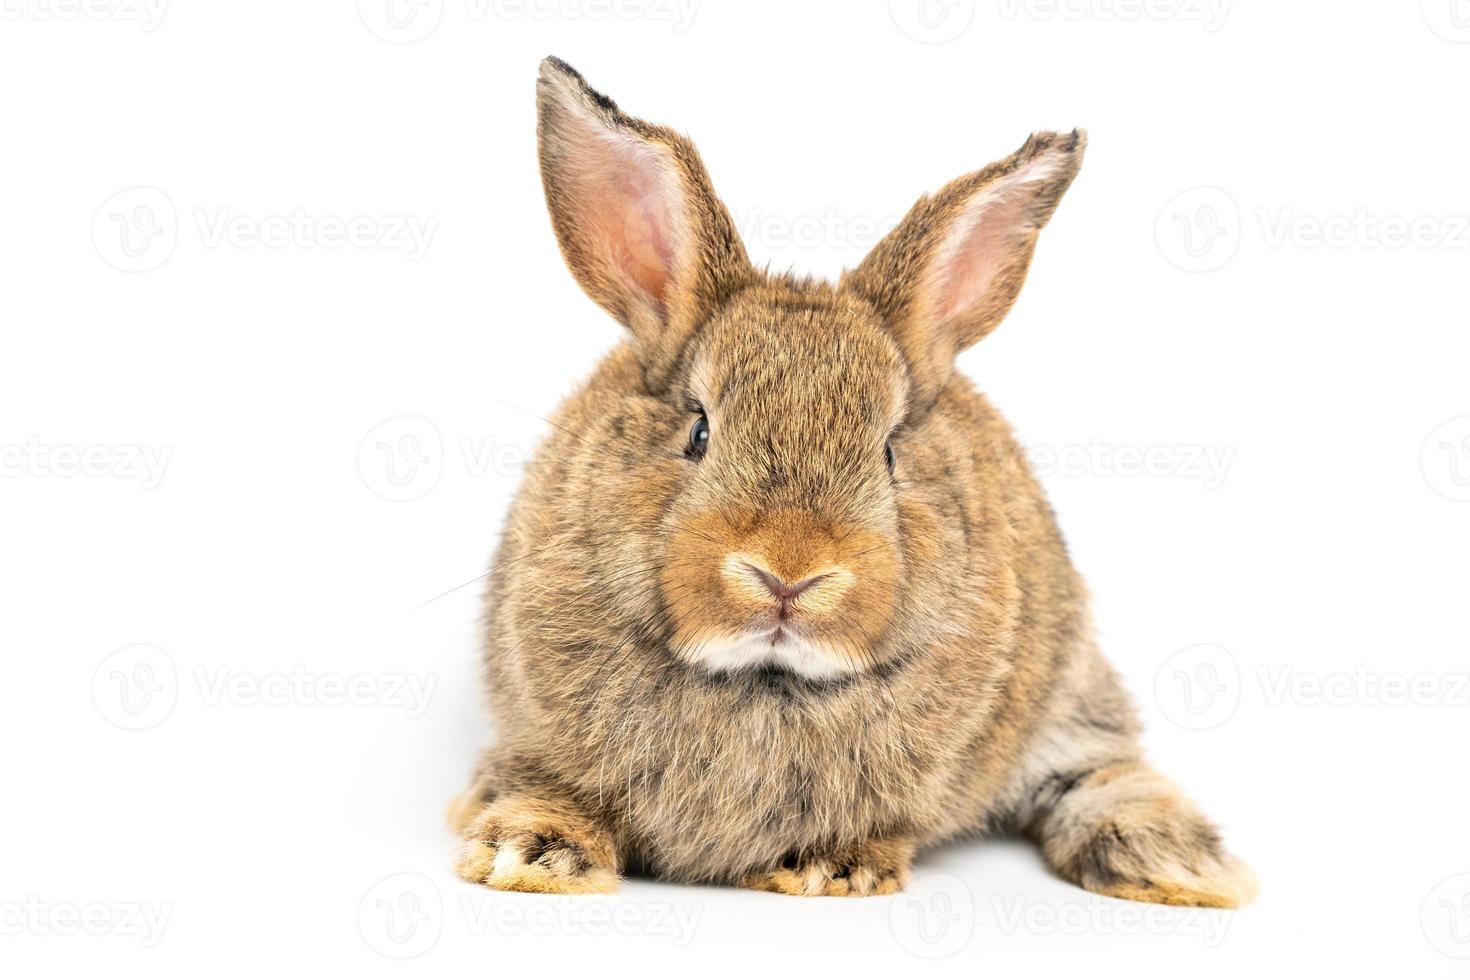 orelhas eretas de coelho marrom vermelho peludo e fofo estão sentadas olhando para a câmera, isoladas no fundo branco. conceito de animal de estimação roedor e páscoa. foto